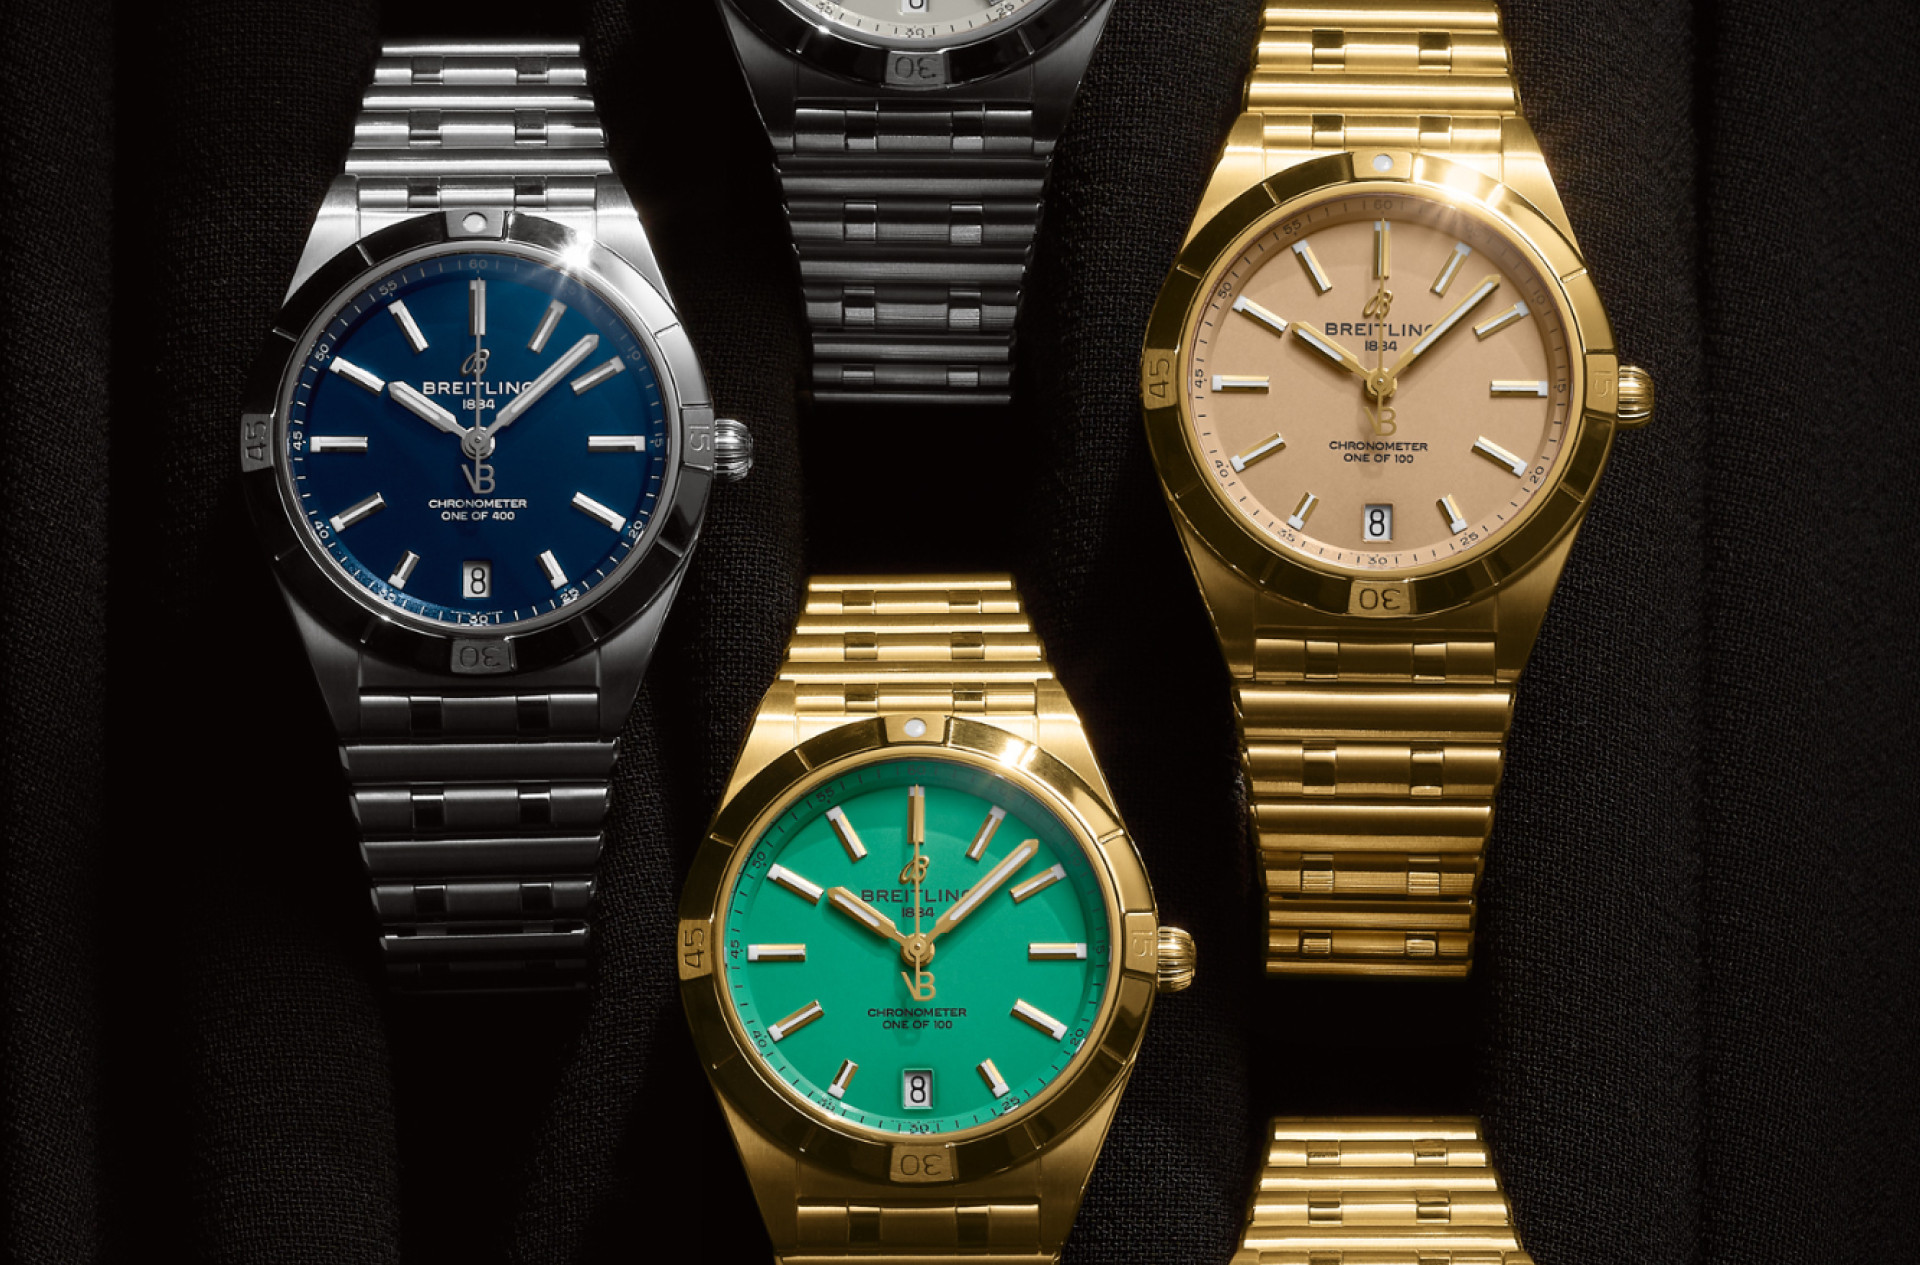 Breitling выпустила коллекцию часов совместно с Викторией Бэкхем